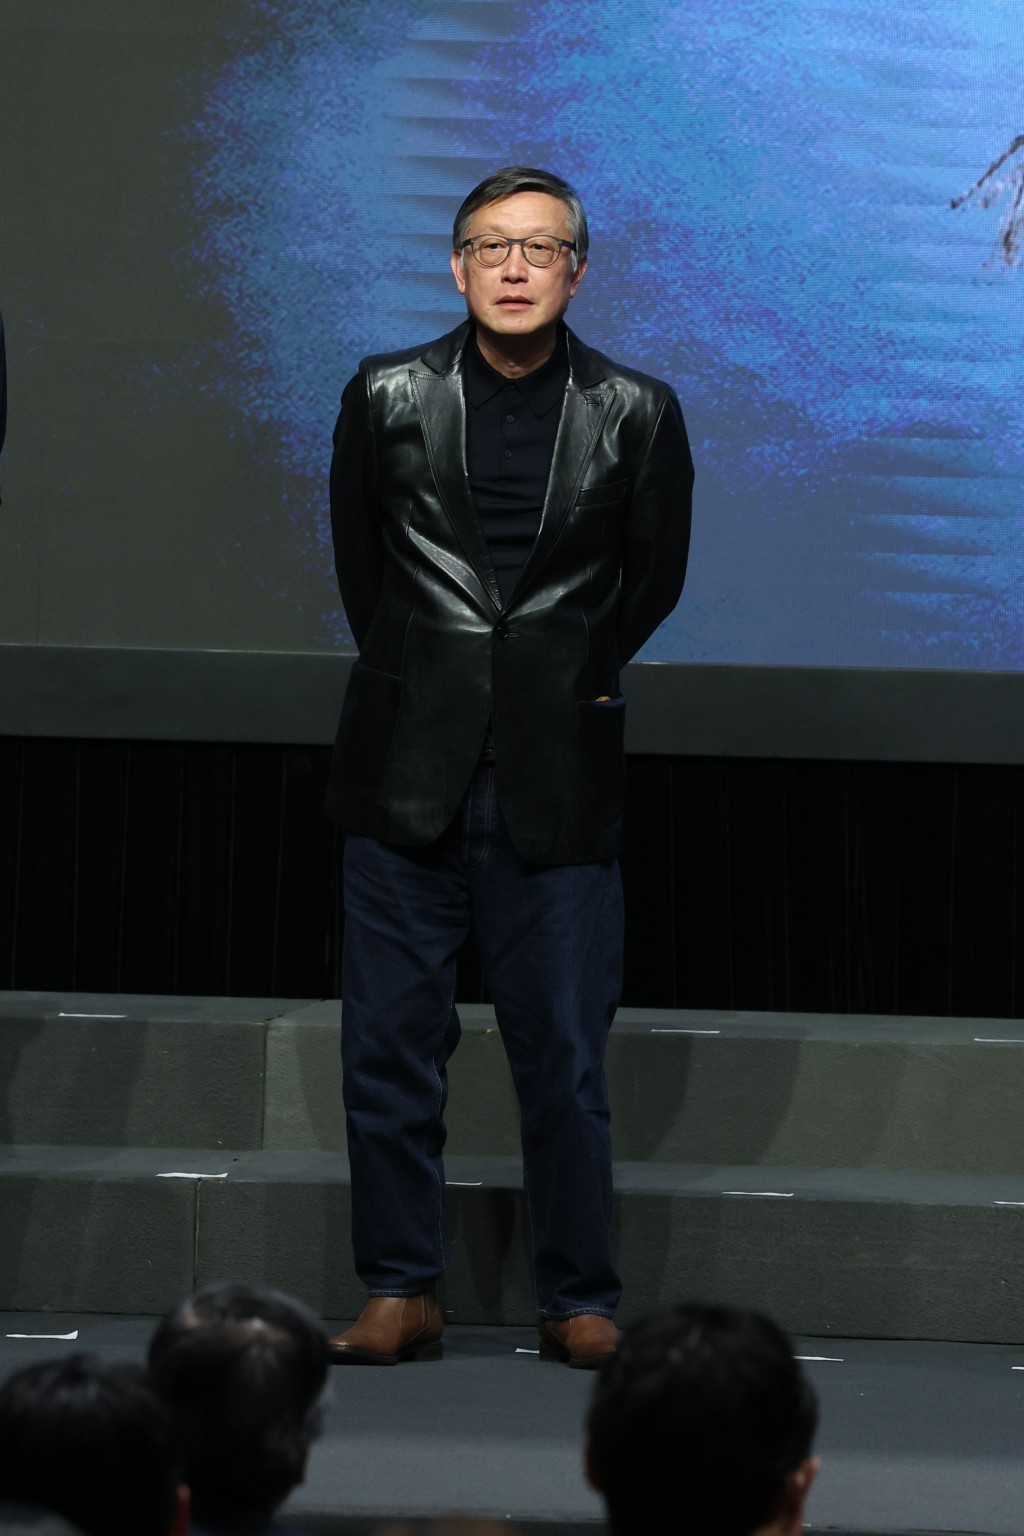 刘伟强为《冒名顶替》担任监制。